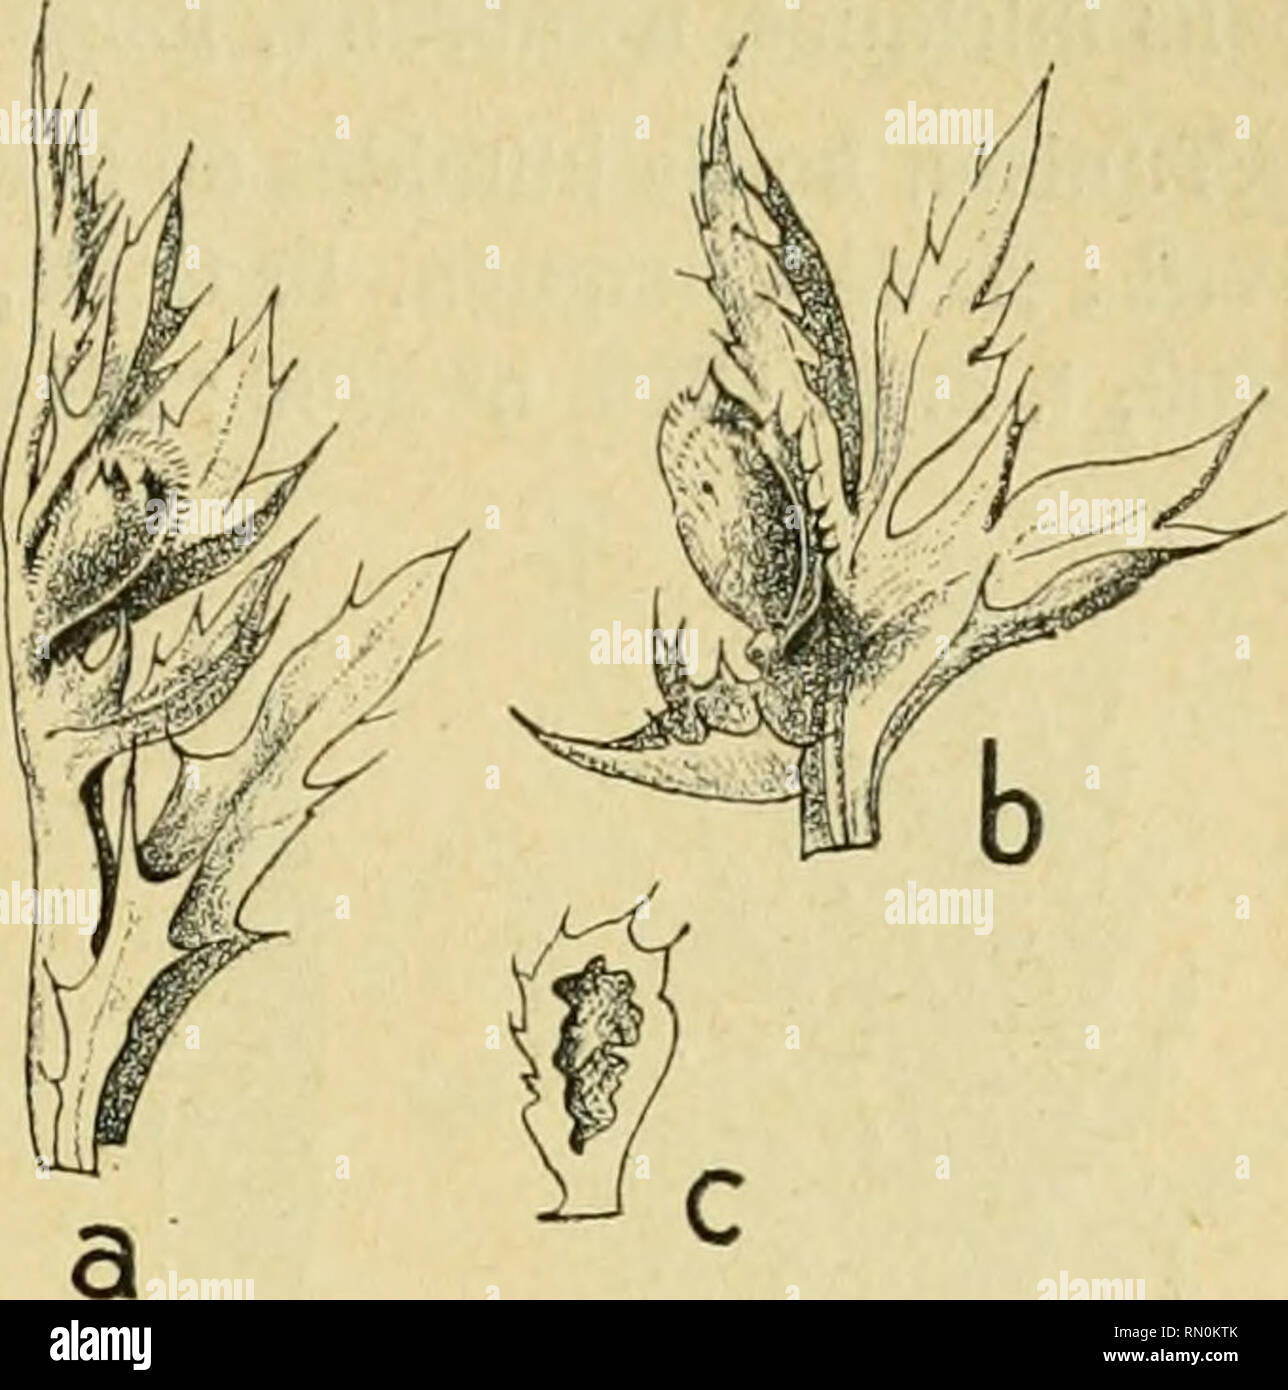 . Annales de la Société entomologique de France. Insects; Entomology. Les Zoocécidies du Nord de rAfrique. 193 ment (Marcellia, 1911, t. 10, p. 9o, n° 2, fig. 6), G. Massalongo a signale la même cécidie de l'île de Malte. Tunisie, Ain-Draham, bord d'un chemin au Djebel-Bir, vers 900 m., 1(^ 22 avril 1910 : Houard, 1!H1, p. lOo, n&quot; 36 ; Collection cécidolog. C. Houard, n° 107. Atractylis gummifera. Anguillulidc (r 329). Fig. 410 (a). — Cécidie foliaire vue latéralement (d'ap. nat. ; gr. 0,8). Fig. ill [b). — La même galle après écartement des lobes de la feuille (d'ap. nat. ; gr. 0,8). Fig Stock Photo